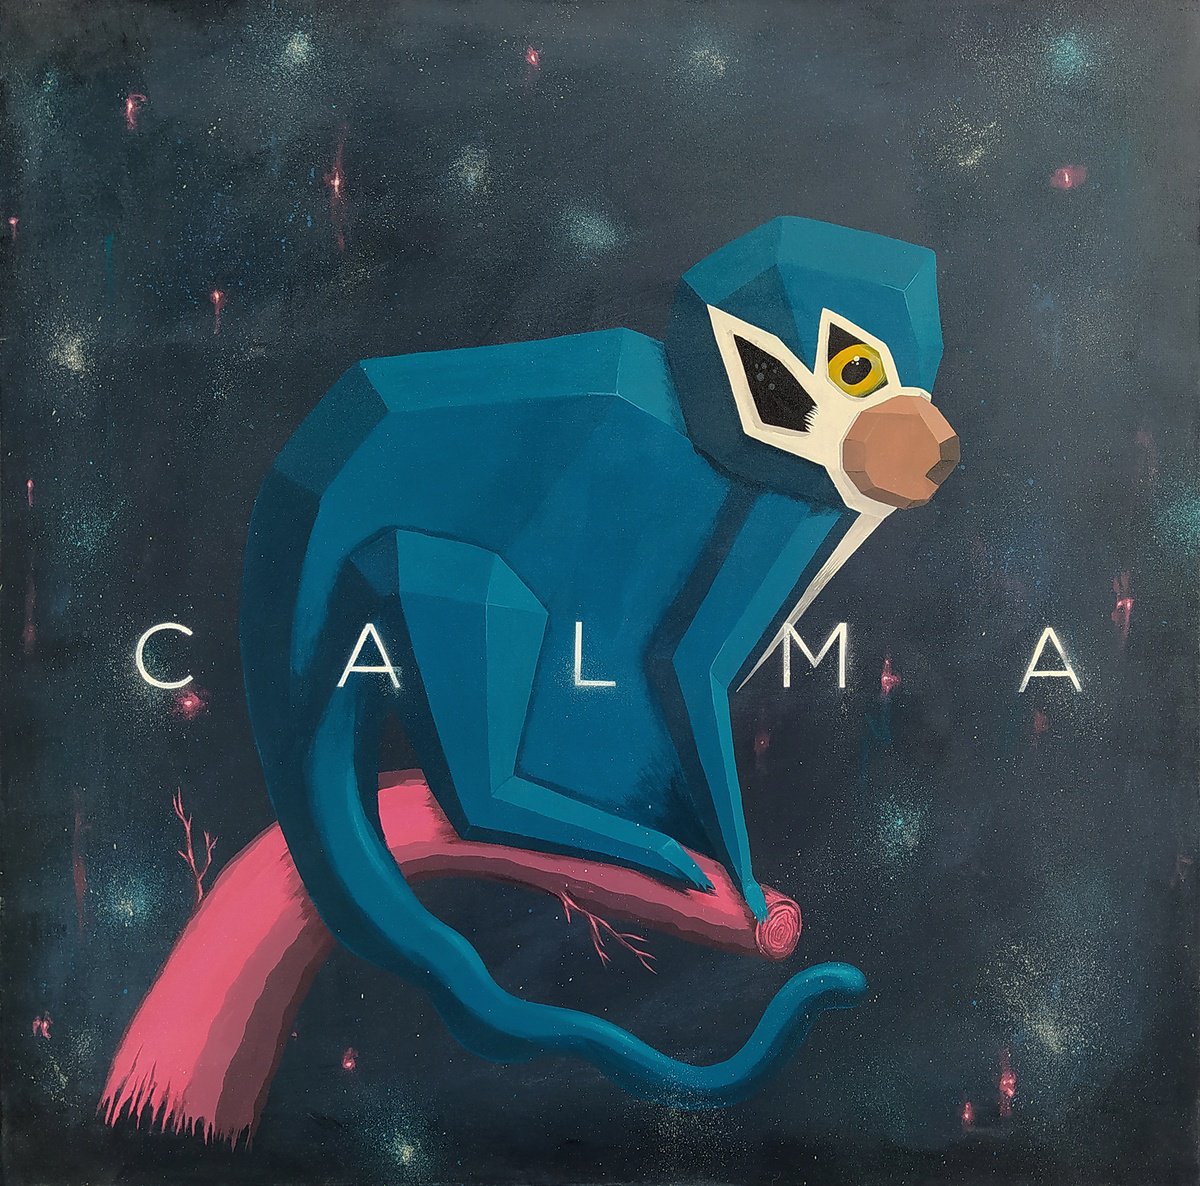 Calma (calm) by Andres Agosin MONK